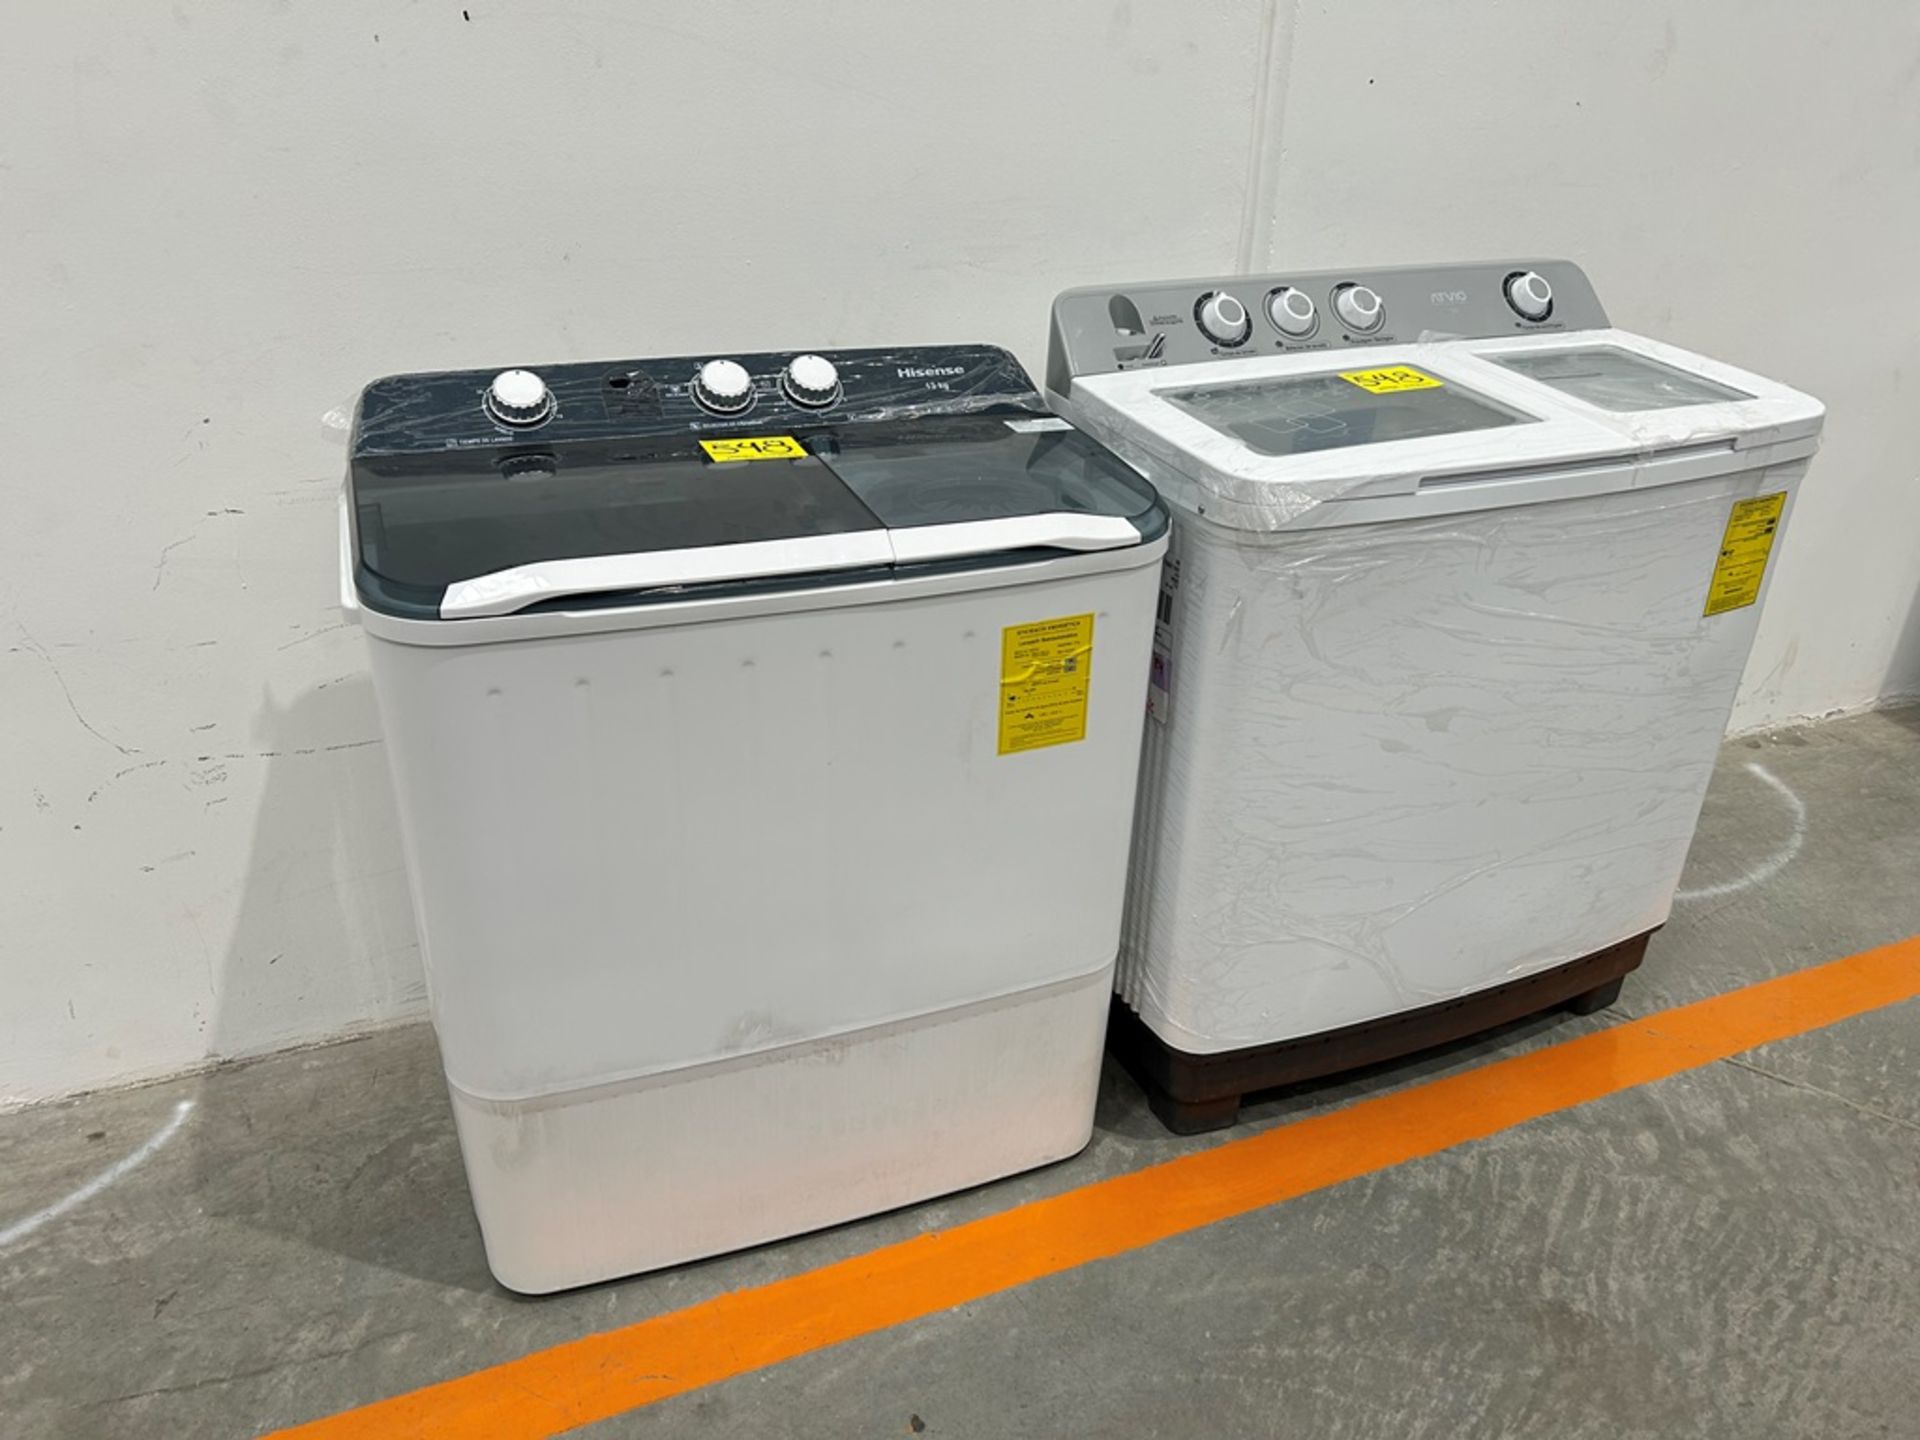 Lote de 2 lavadoras contiene: 1 Lavadora de 15kg Marca ATVIO, Modelo TT15KG, Serie 501266, Color BL - Bild 3 aus 12